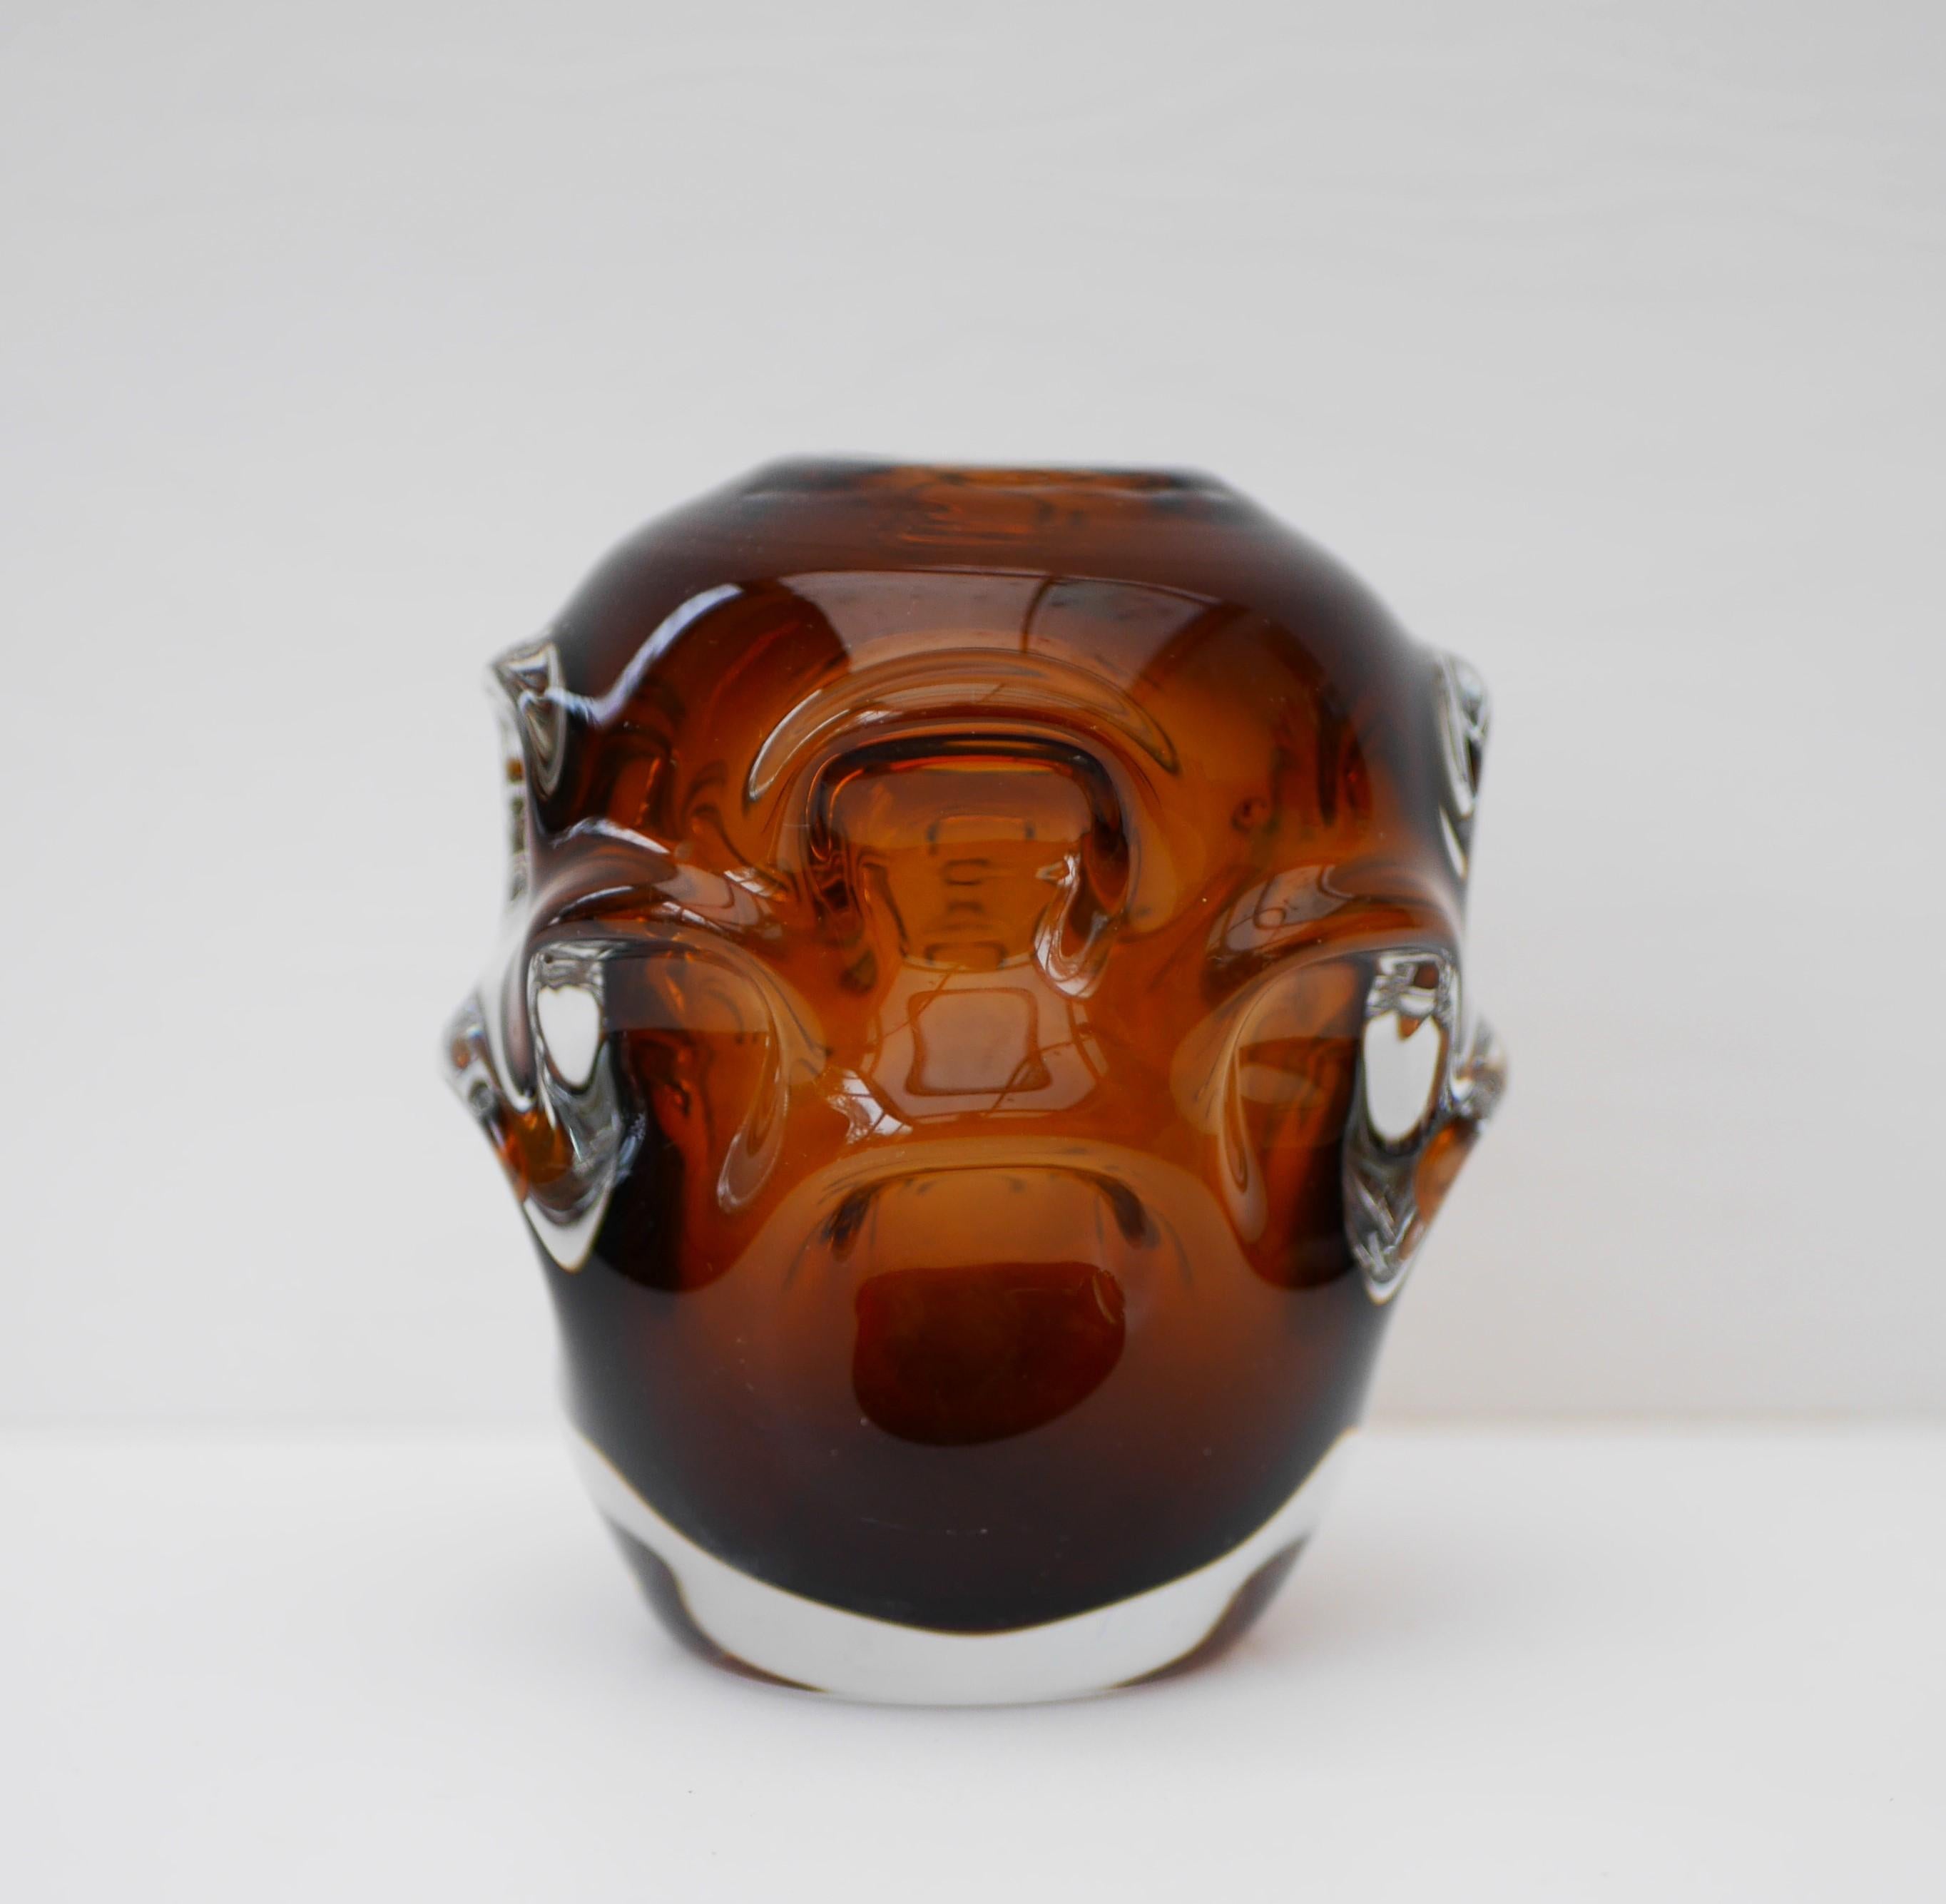 Un superbe vase en verre ambré foncé de Börne Augustsson för Åseda Glassworks, Suède. Non signé, datant des années 1950. Une pièce moderniste étonnante, ce vase en verre est un véritable objet d'appel.

Åseda a été créée le 29 juin 1946 et